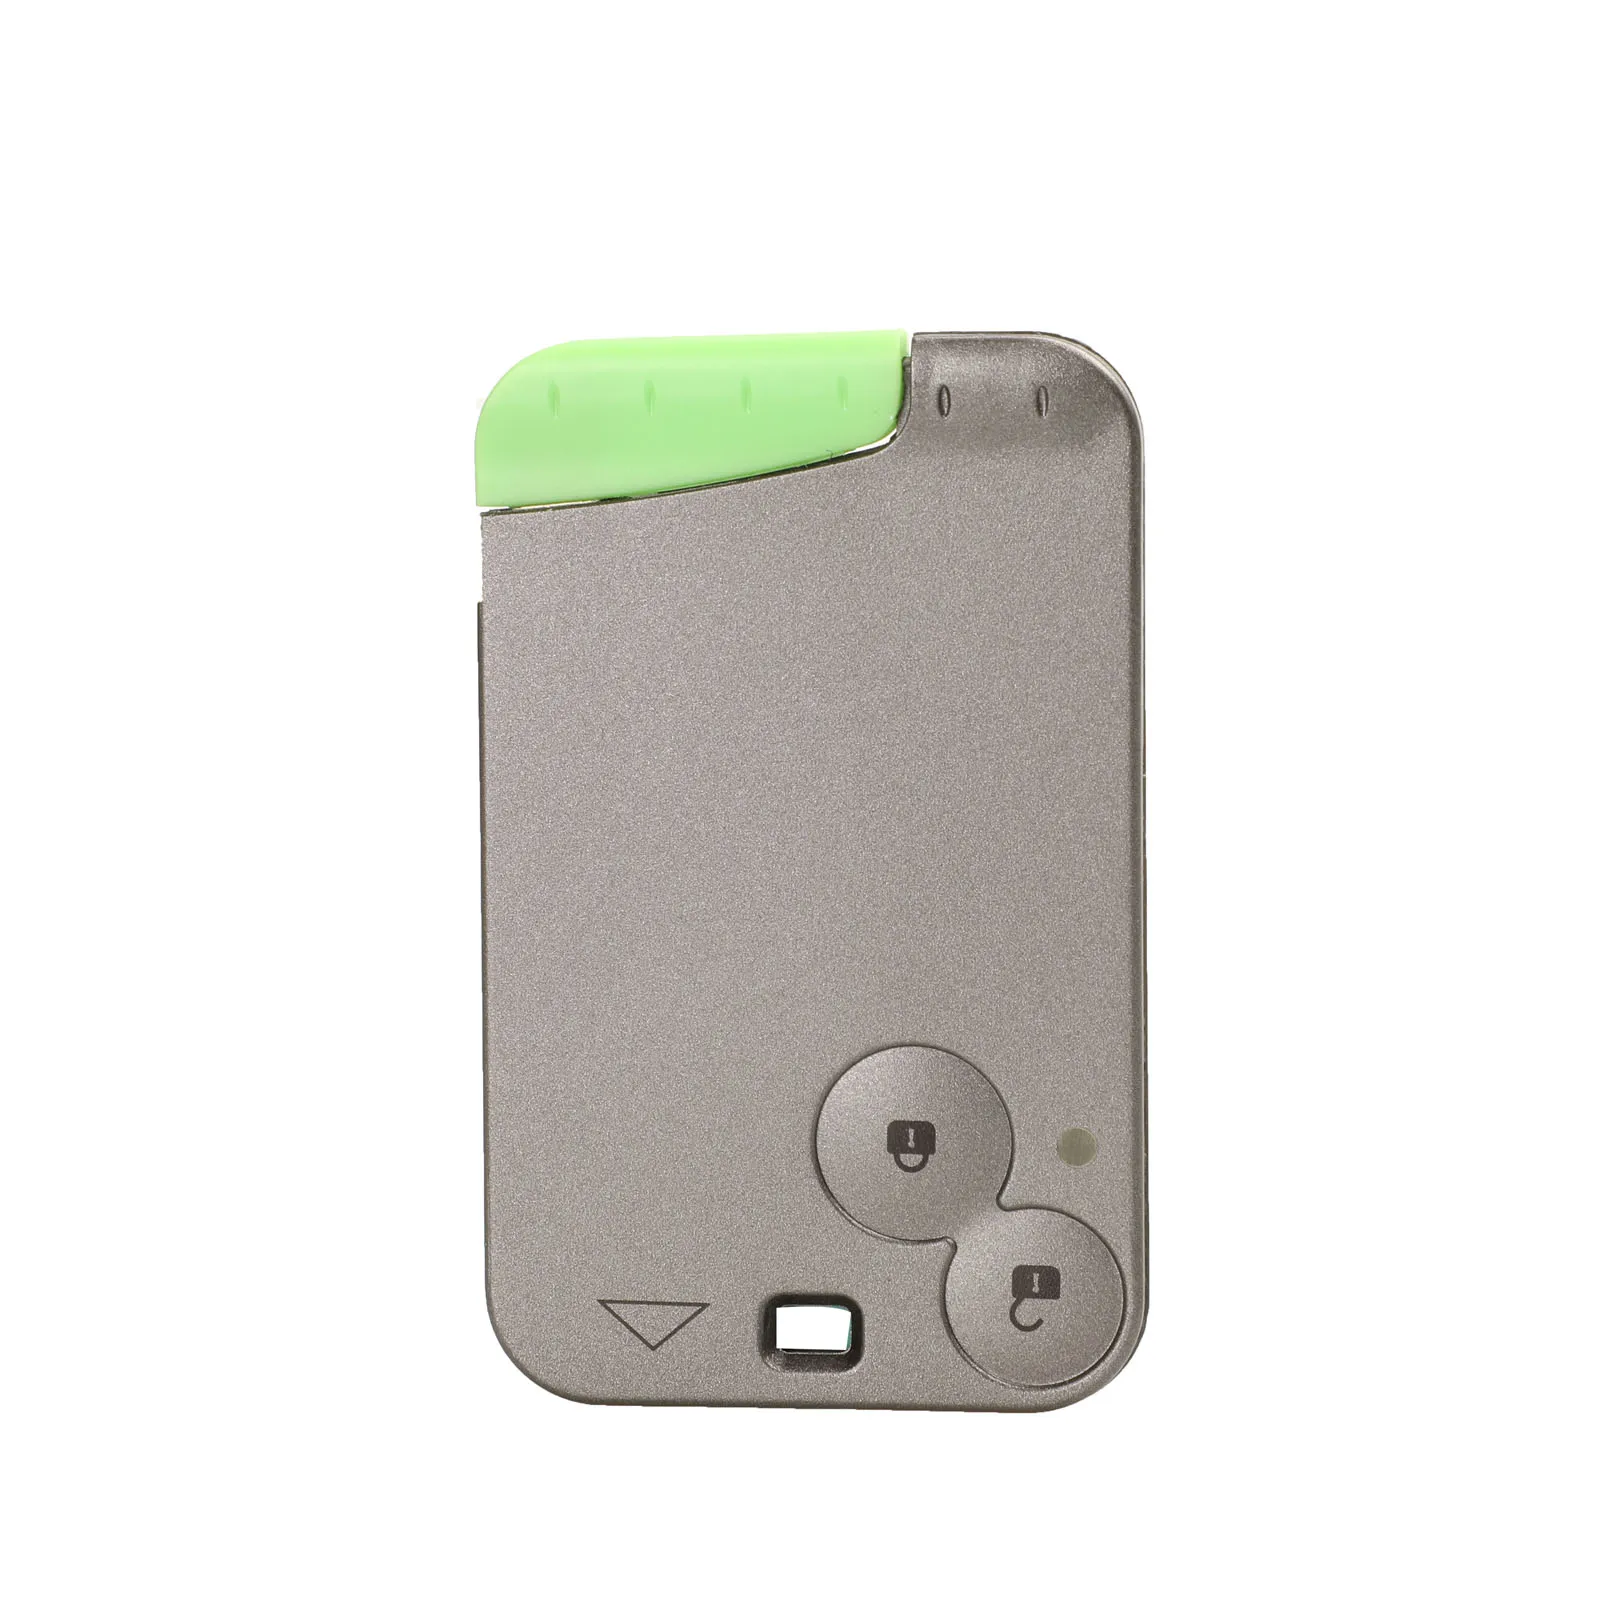 Jingyuqin 10 шт. пульт дистанционного управления 2/3 кнопки защитный чехол для ключей Крышка для Renault Лагуна Espace смарт-карта с лезвием - Количество кнопок: 2 Кнопки